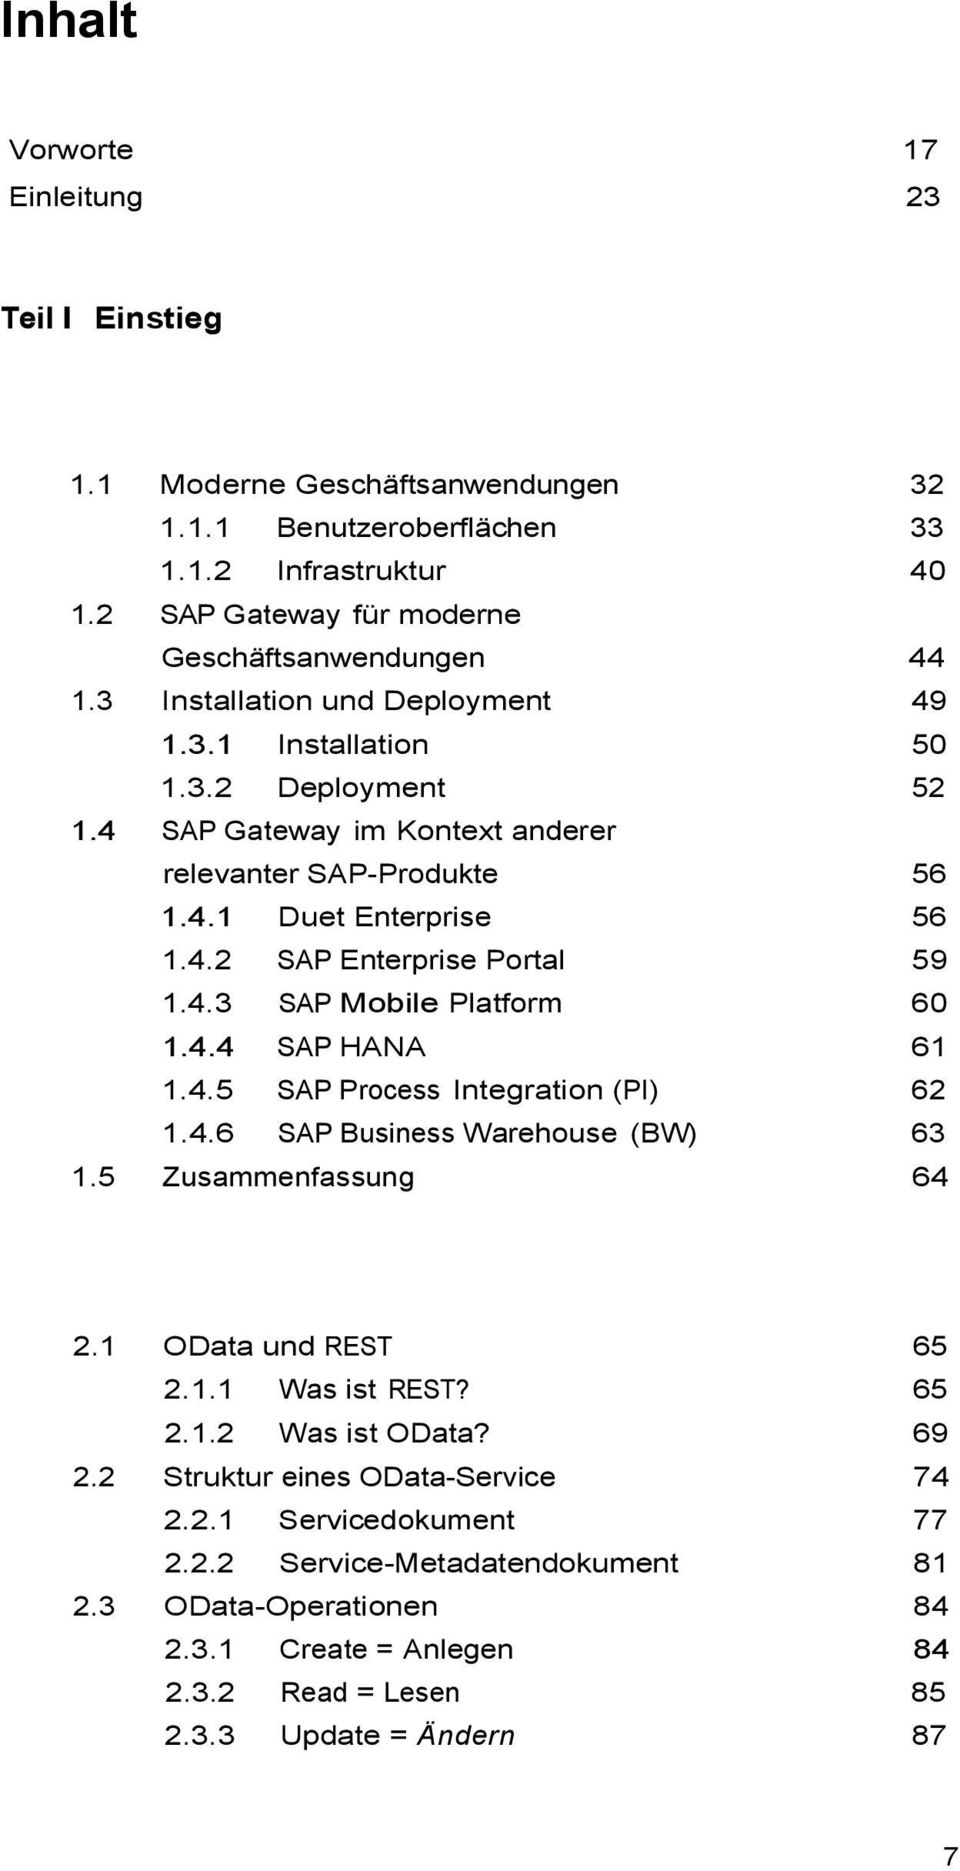 4.4 SAP HANA 61 1.4.5 SAP Process Integration (PI) 62 1.4.6 SAP Business Warehouse (BW) 63 1.5 Zusammenfassung 64 2.1 OData und REST 65 2.1.1 Was ist REST? 65 2.1.2 Was ist OData? 69 2.